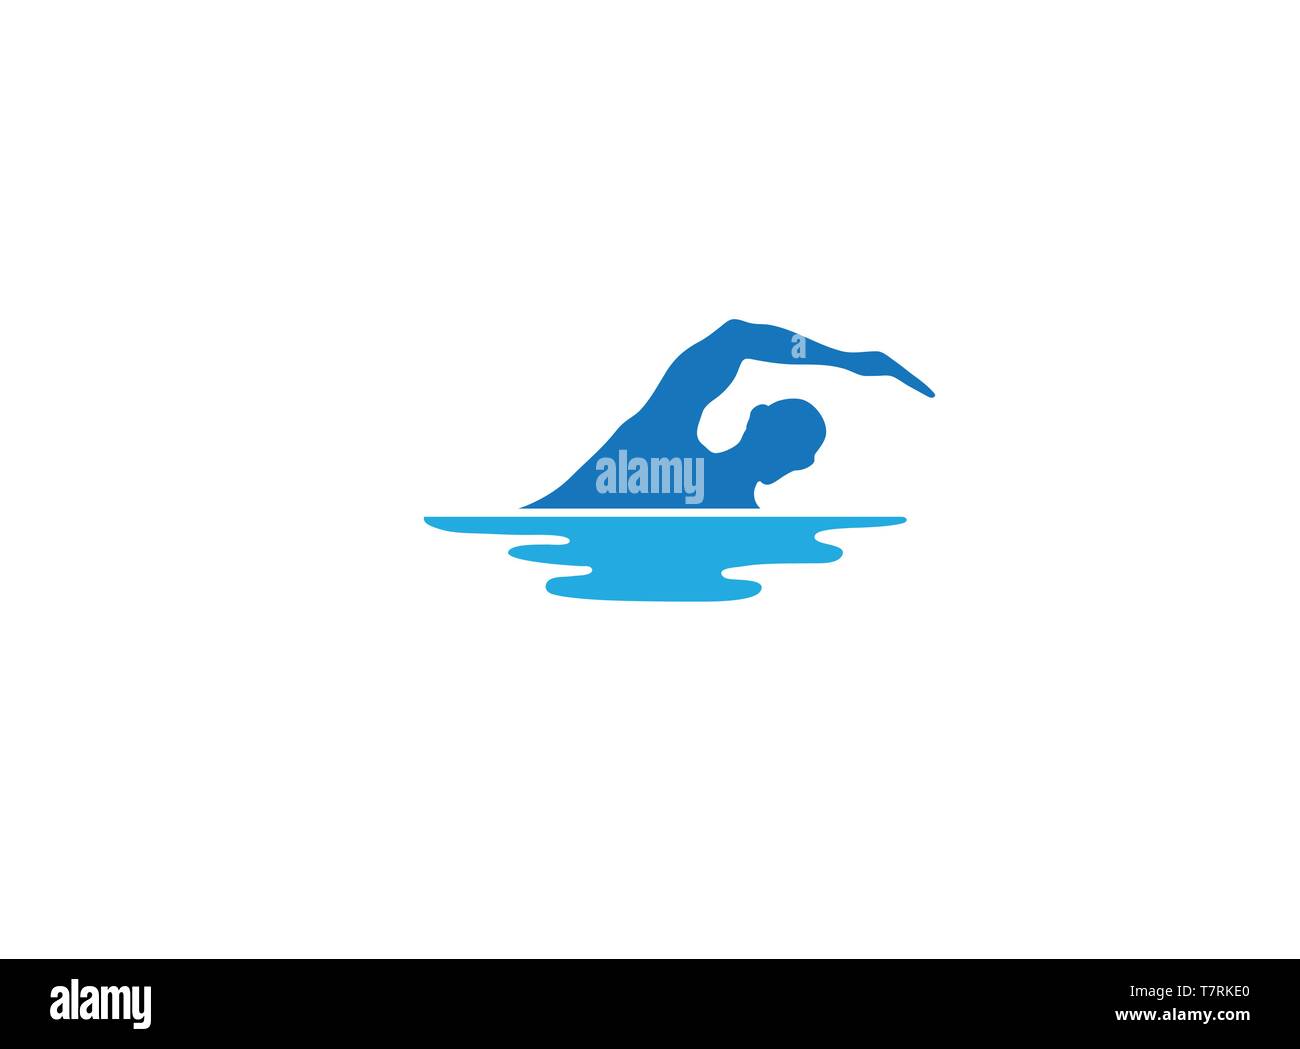 La natation dans la piscine de conception de logo pour Triathlon Illustration de Vecteur